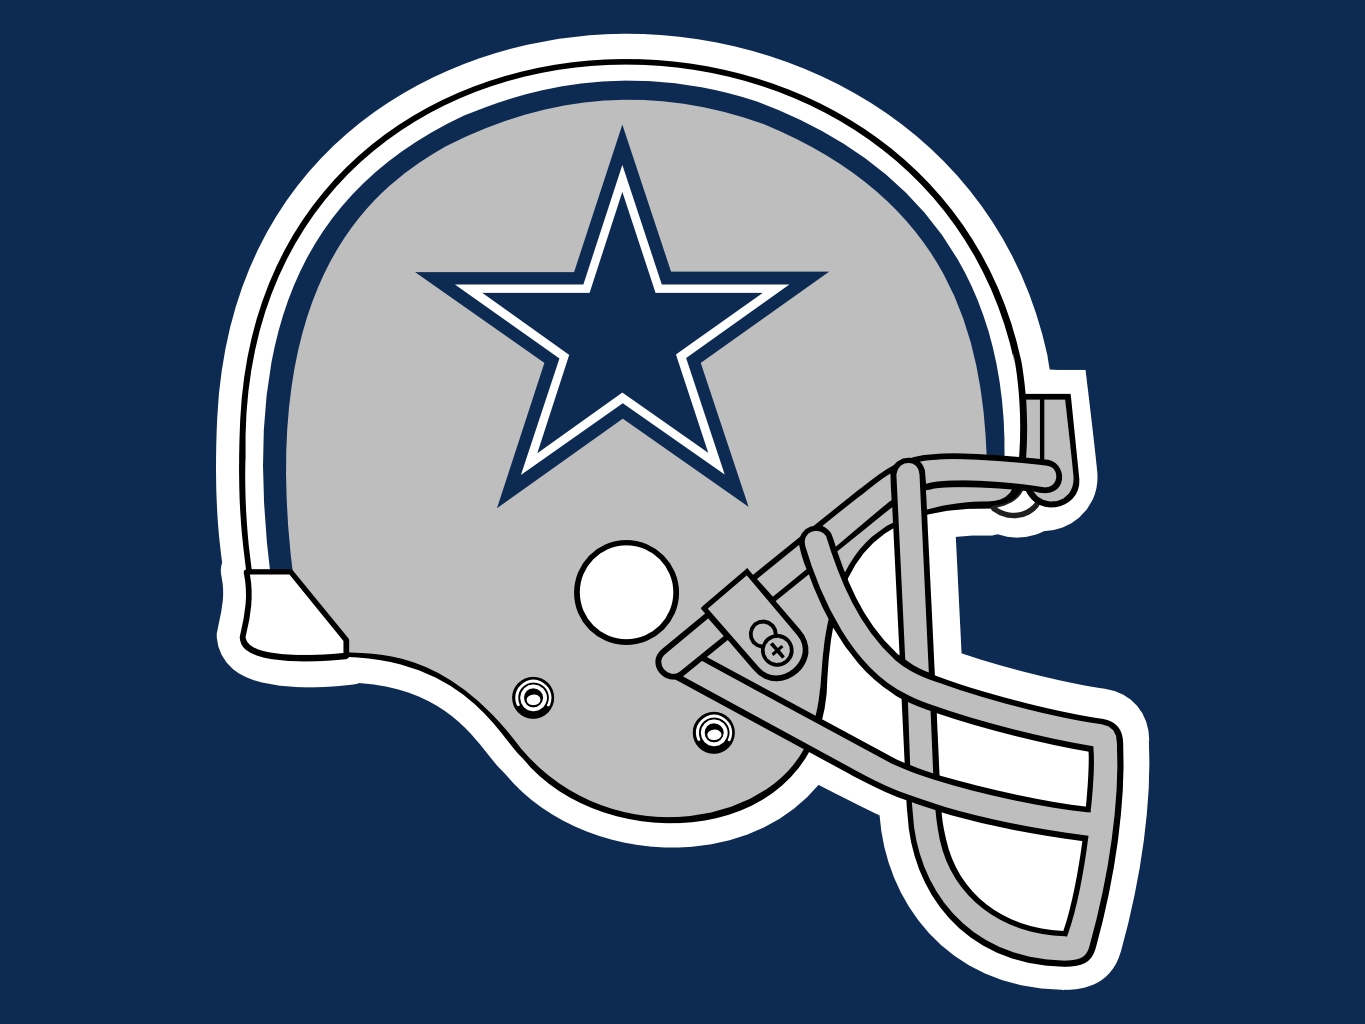 [49+] Dallas Cowboys Logos and Wallpapers on WallpaperSafari